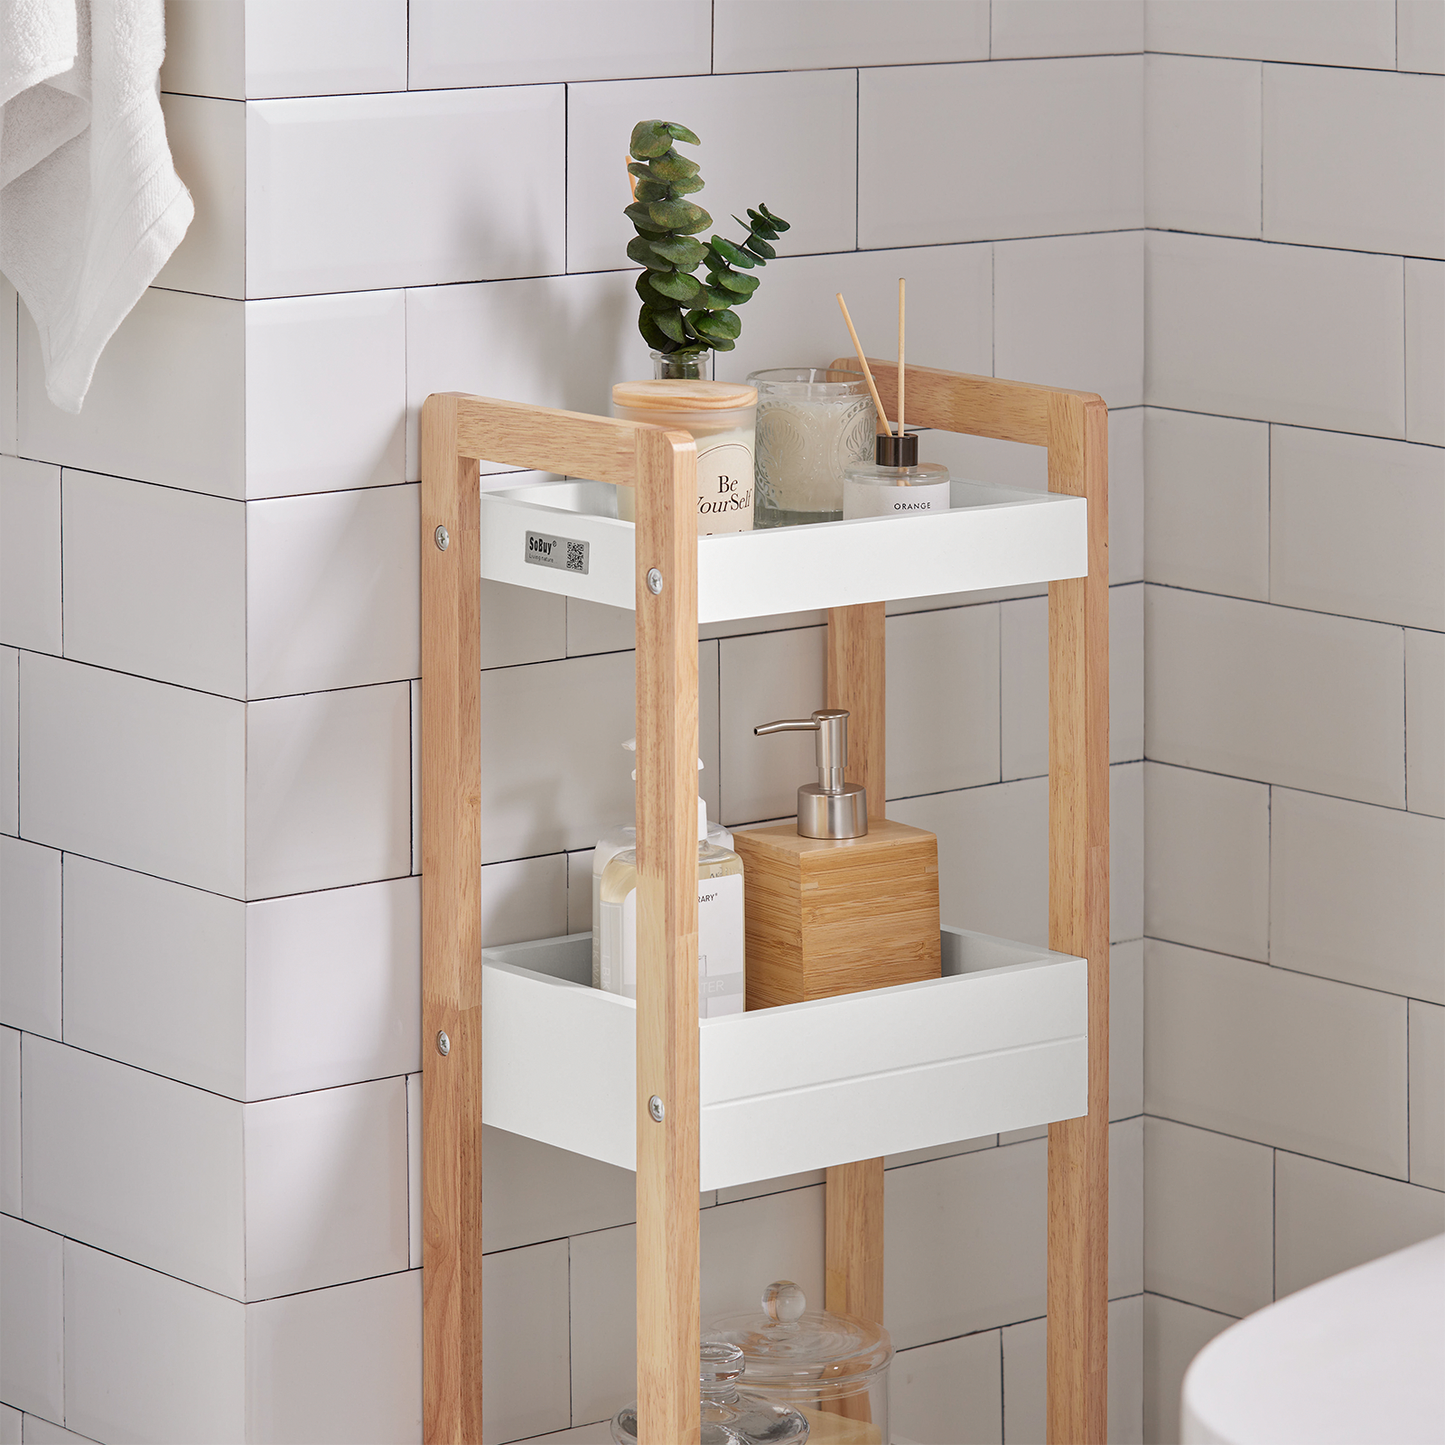 SoBuy FRG226-WN 3-Tier Bathroom Shelf, White Storage Shelf, Organizer Shelving Unit